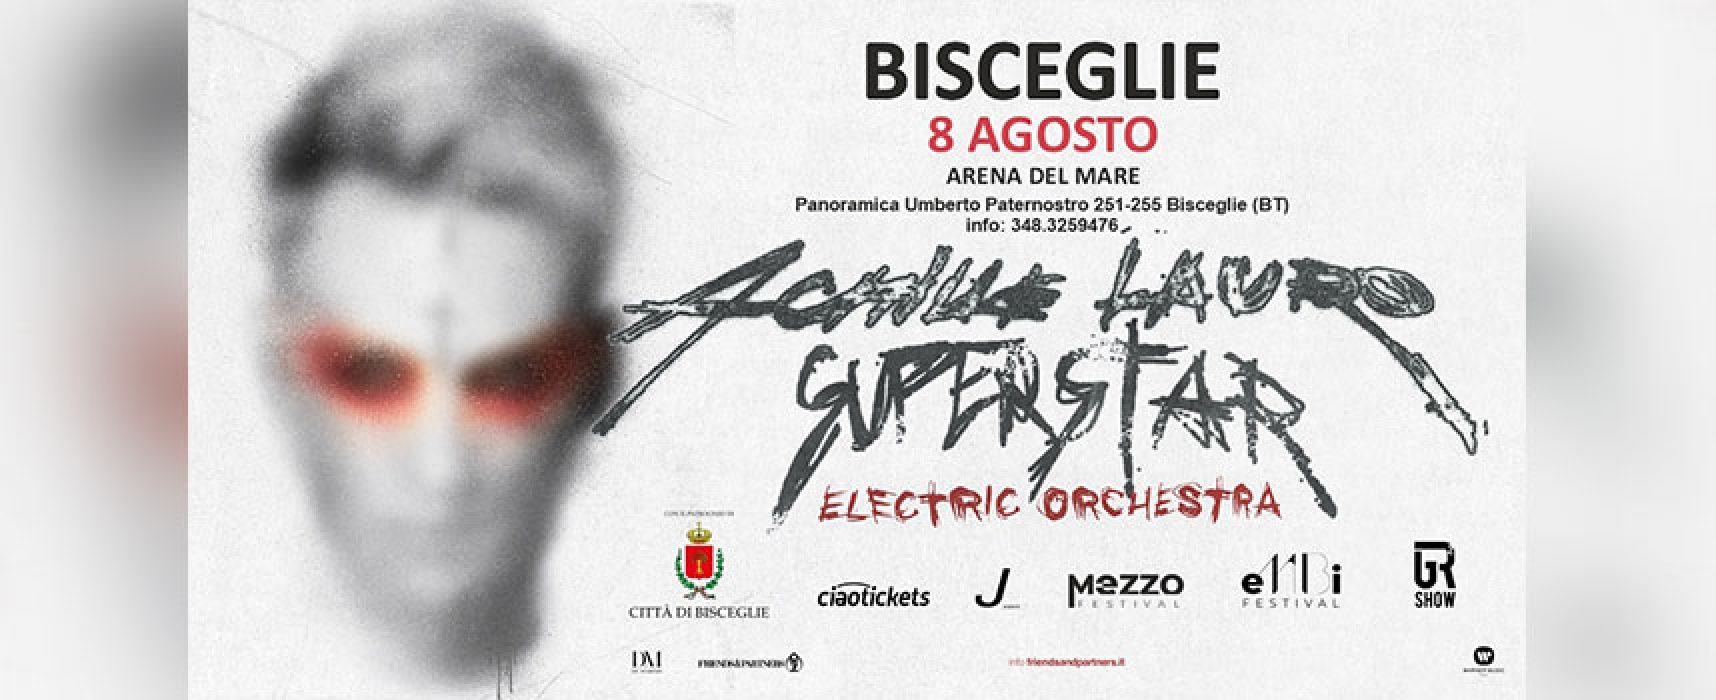 Tutto pronto a Bisceglie per il concerto “Superstar Tour & Electric Orchestra di Achille Lauro” / INFO